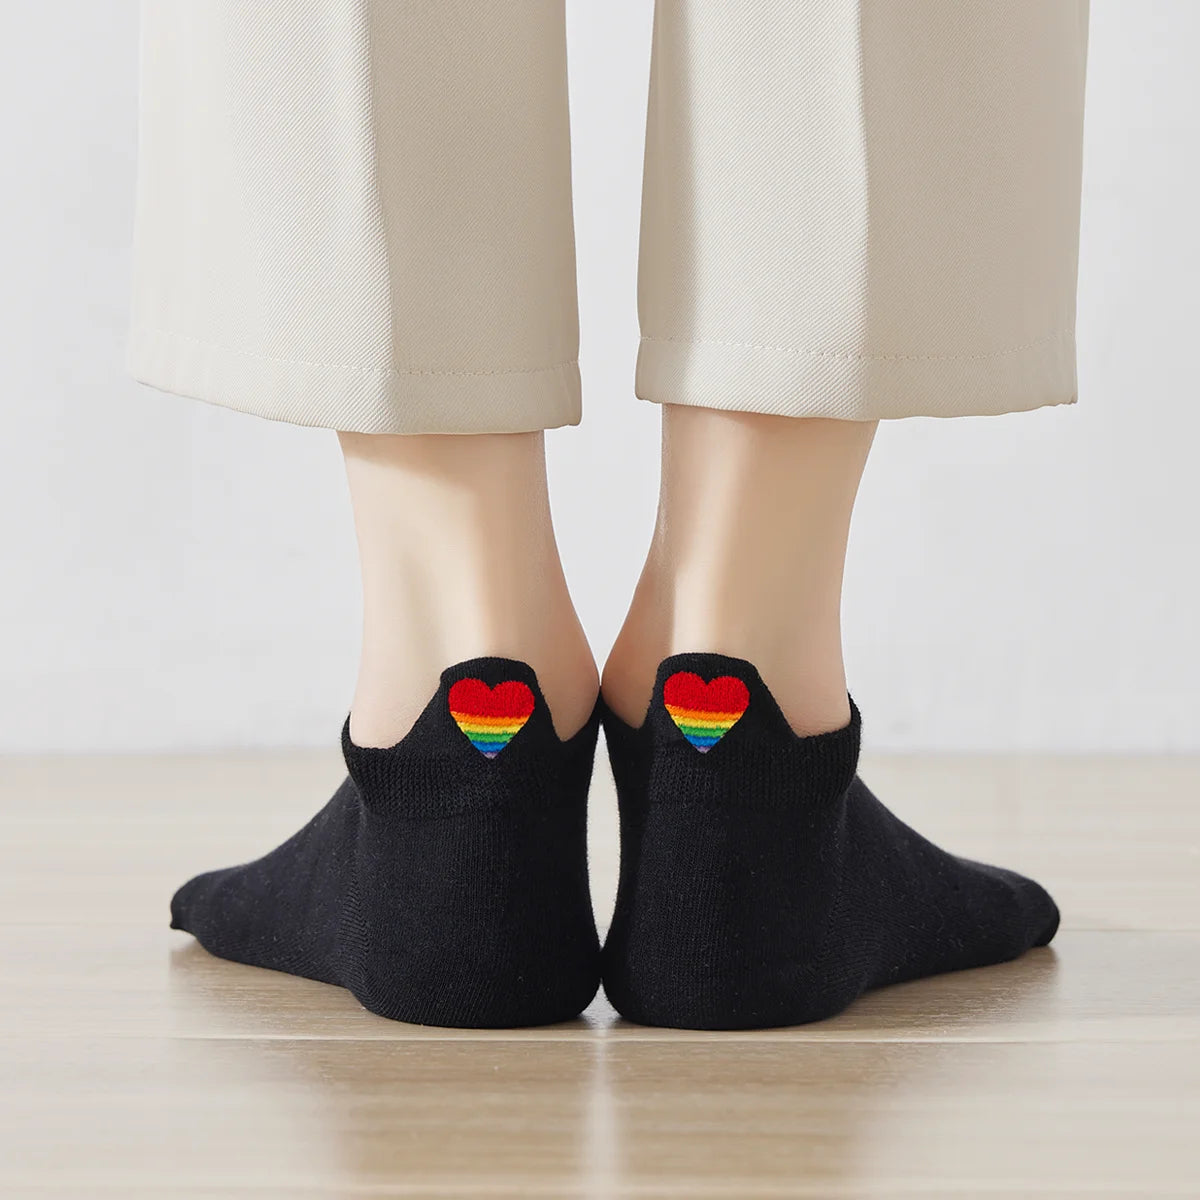 Chaussettes noires en coton à languette cœur arc-en-ciel pour femme | Chaussettes confortables et élégantes | Idéales pour le quotidien ou les occasions spéciales